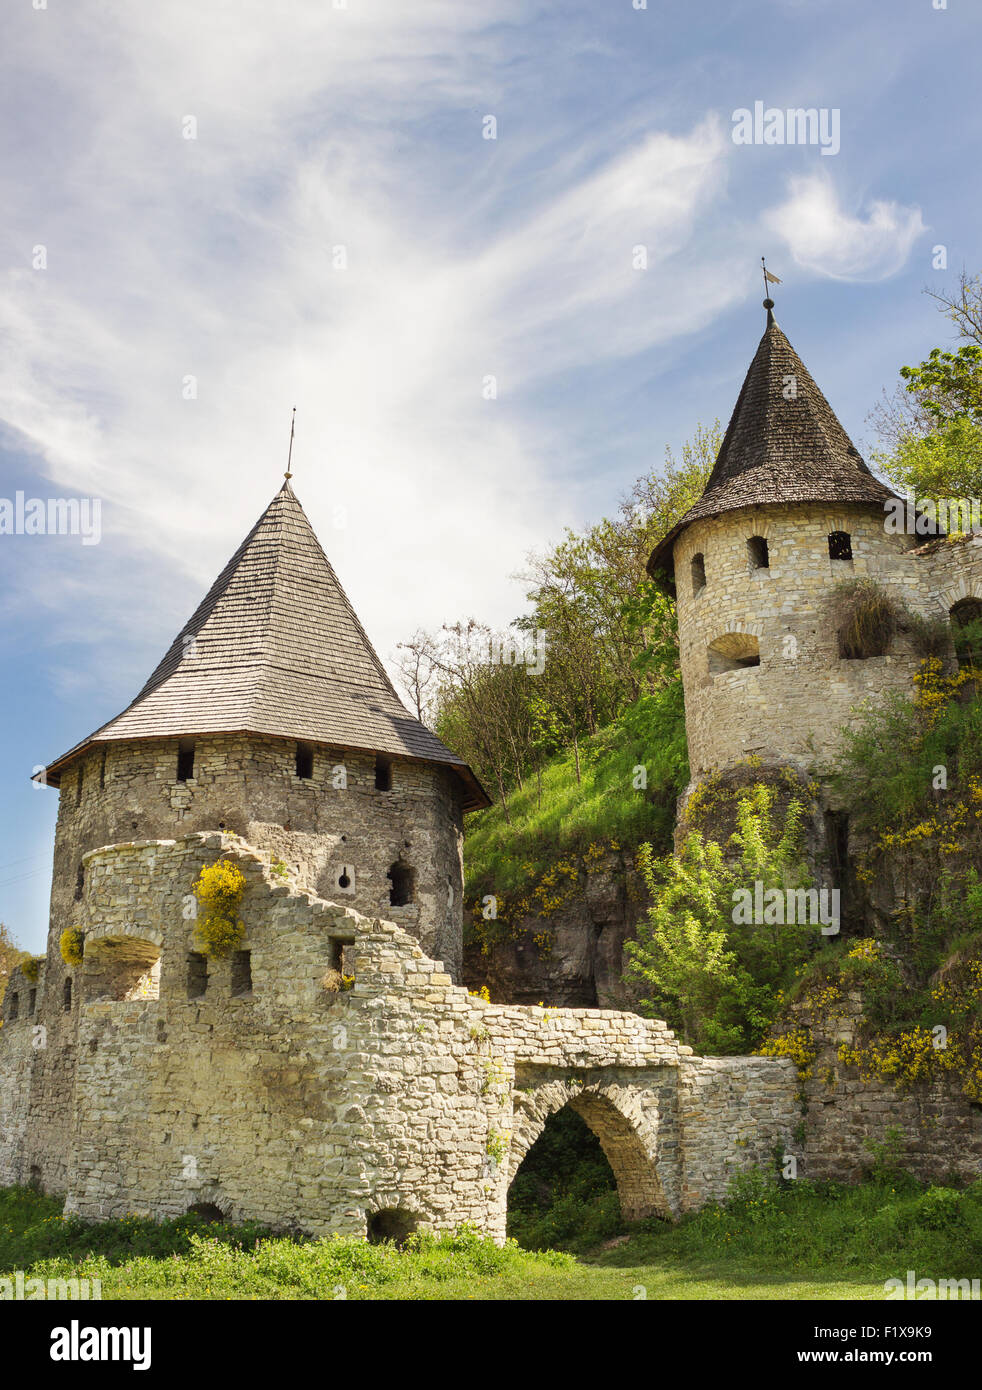 Alten Turm der mittelalterlichen Burg. Stockfoto